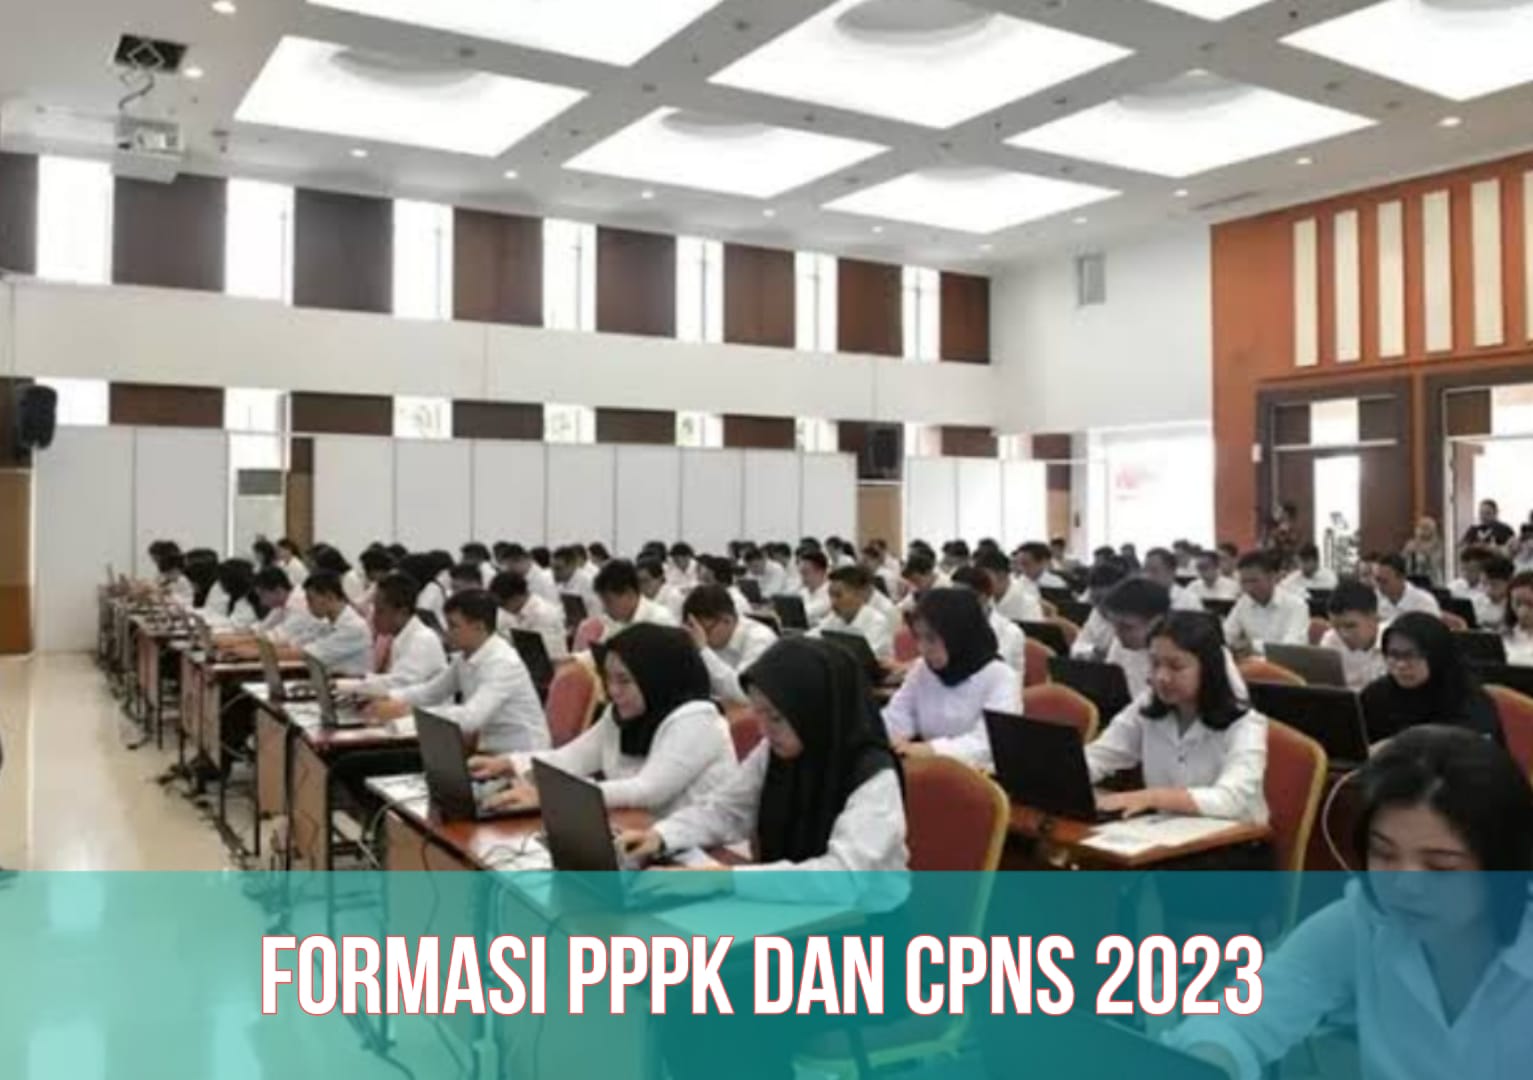 CPNS dan PPPK 2023 Dibuka 17 September, Cek Formasi yang Tersedia, Beserta Jadwal Lengkapnya